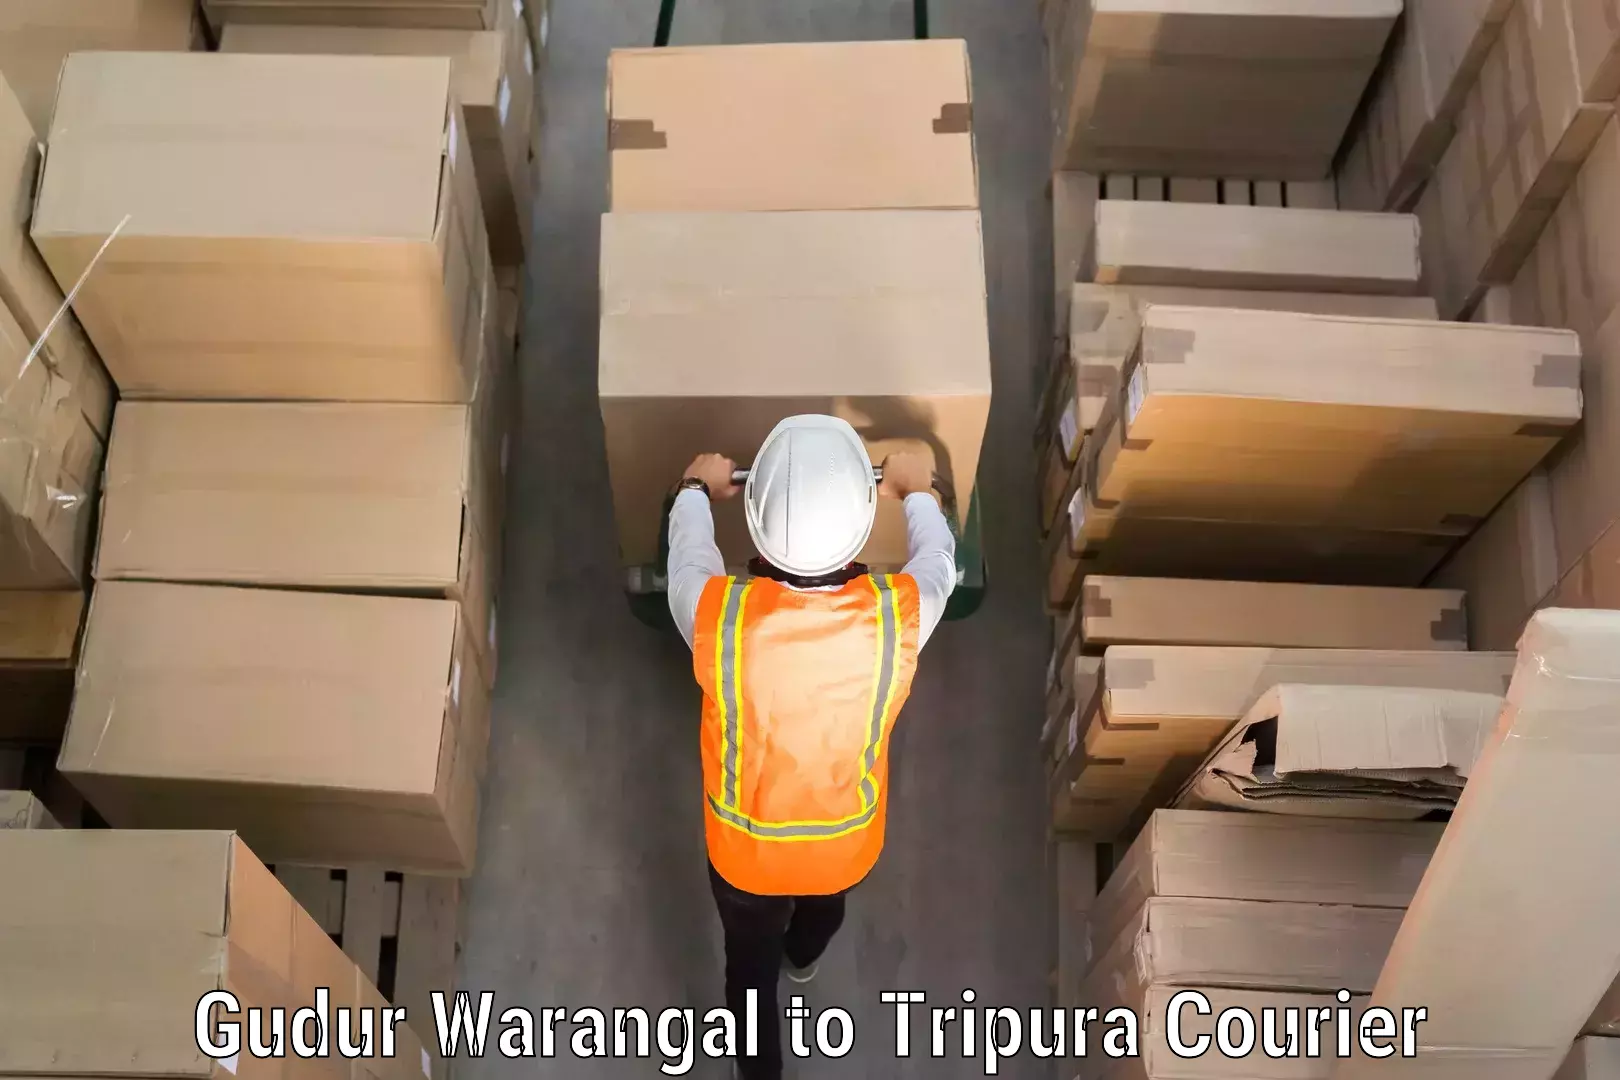 Baggage transport network Gudur Warangal to NIT Agartala